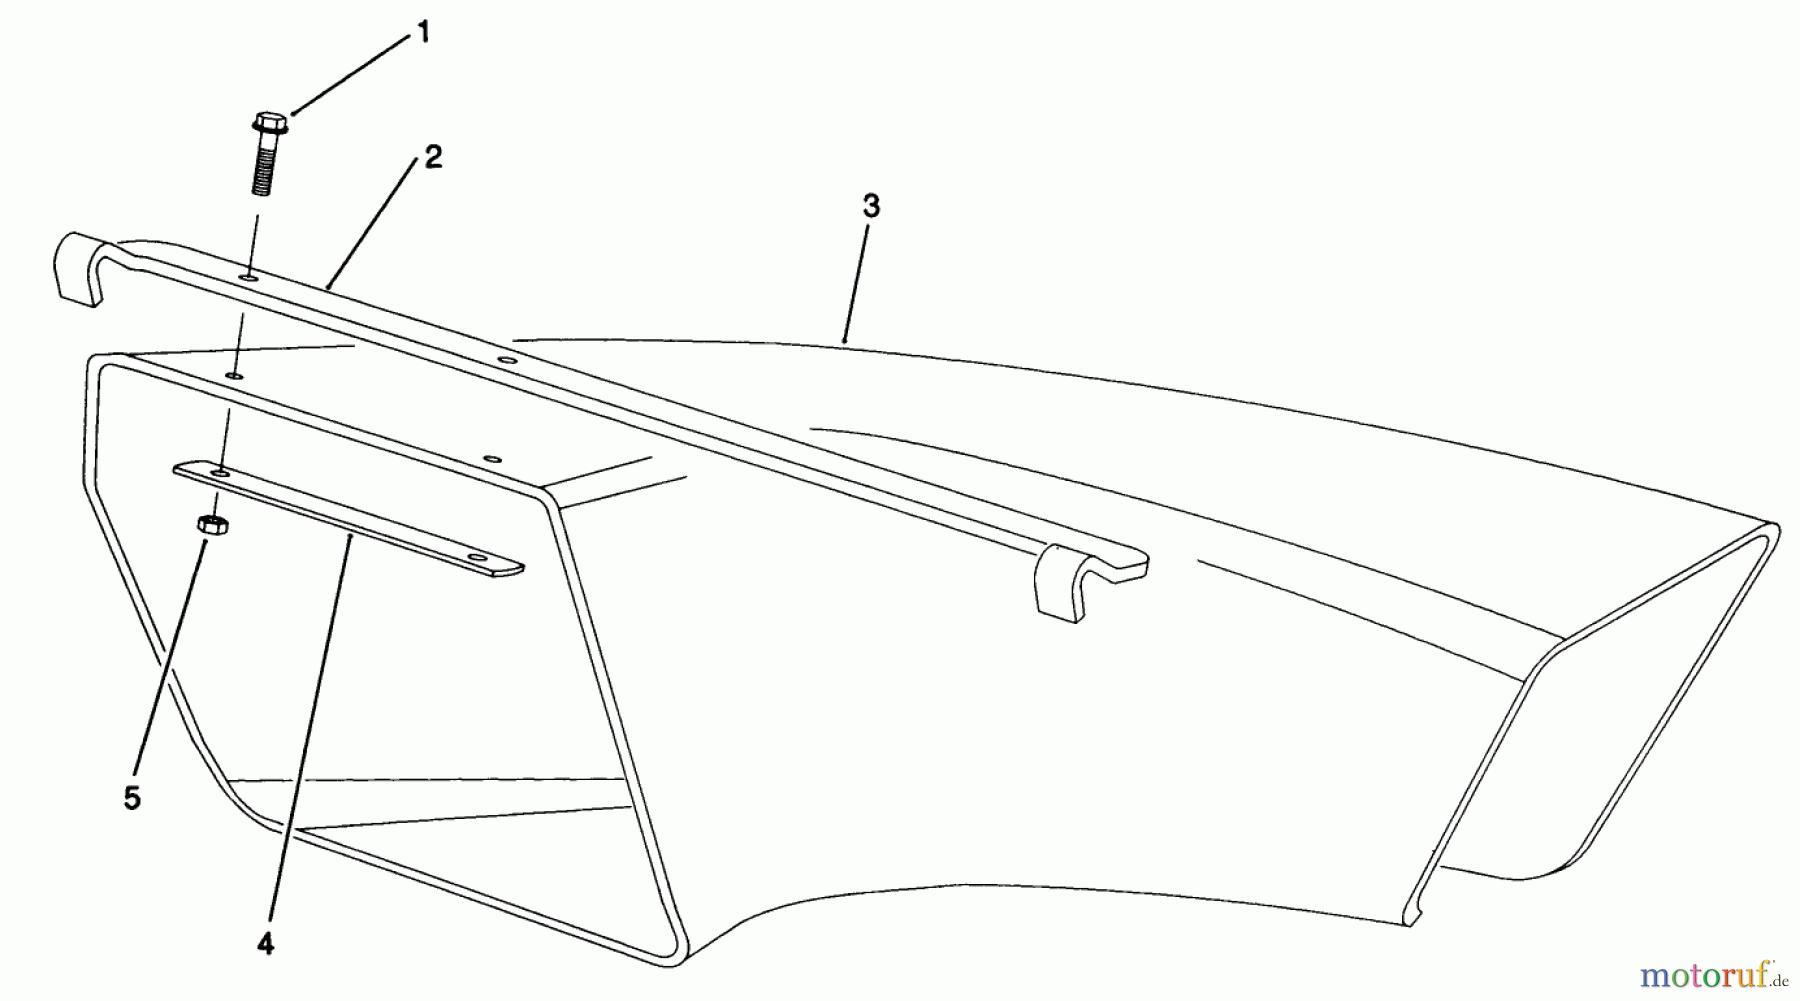  Toro Neu Mowers, Walk-Behind Seite 2 22042 - Toro Lawnmower, 1991 (1000001-1999999) SIDE DISCHARGE CHUTE MODEL NO. 59112 (OPTIONAL)